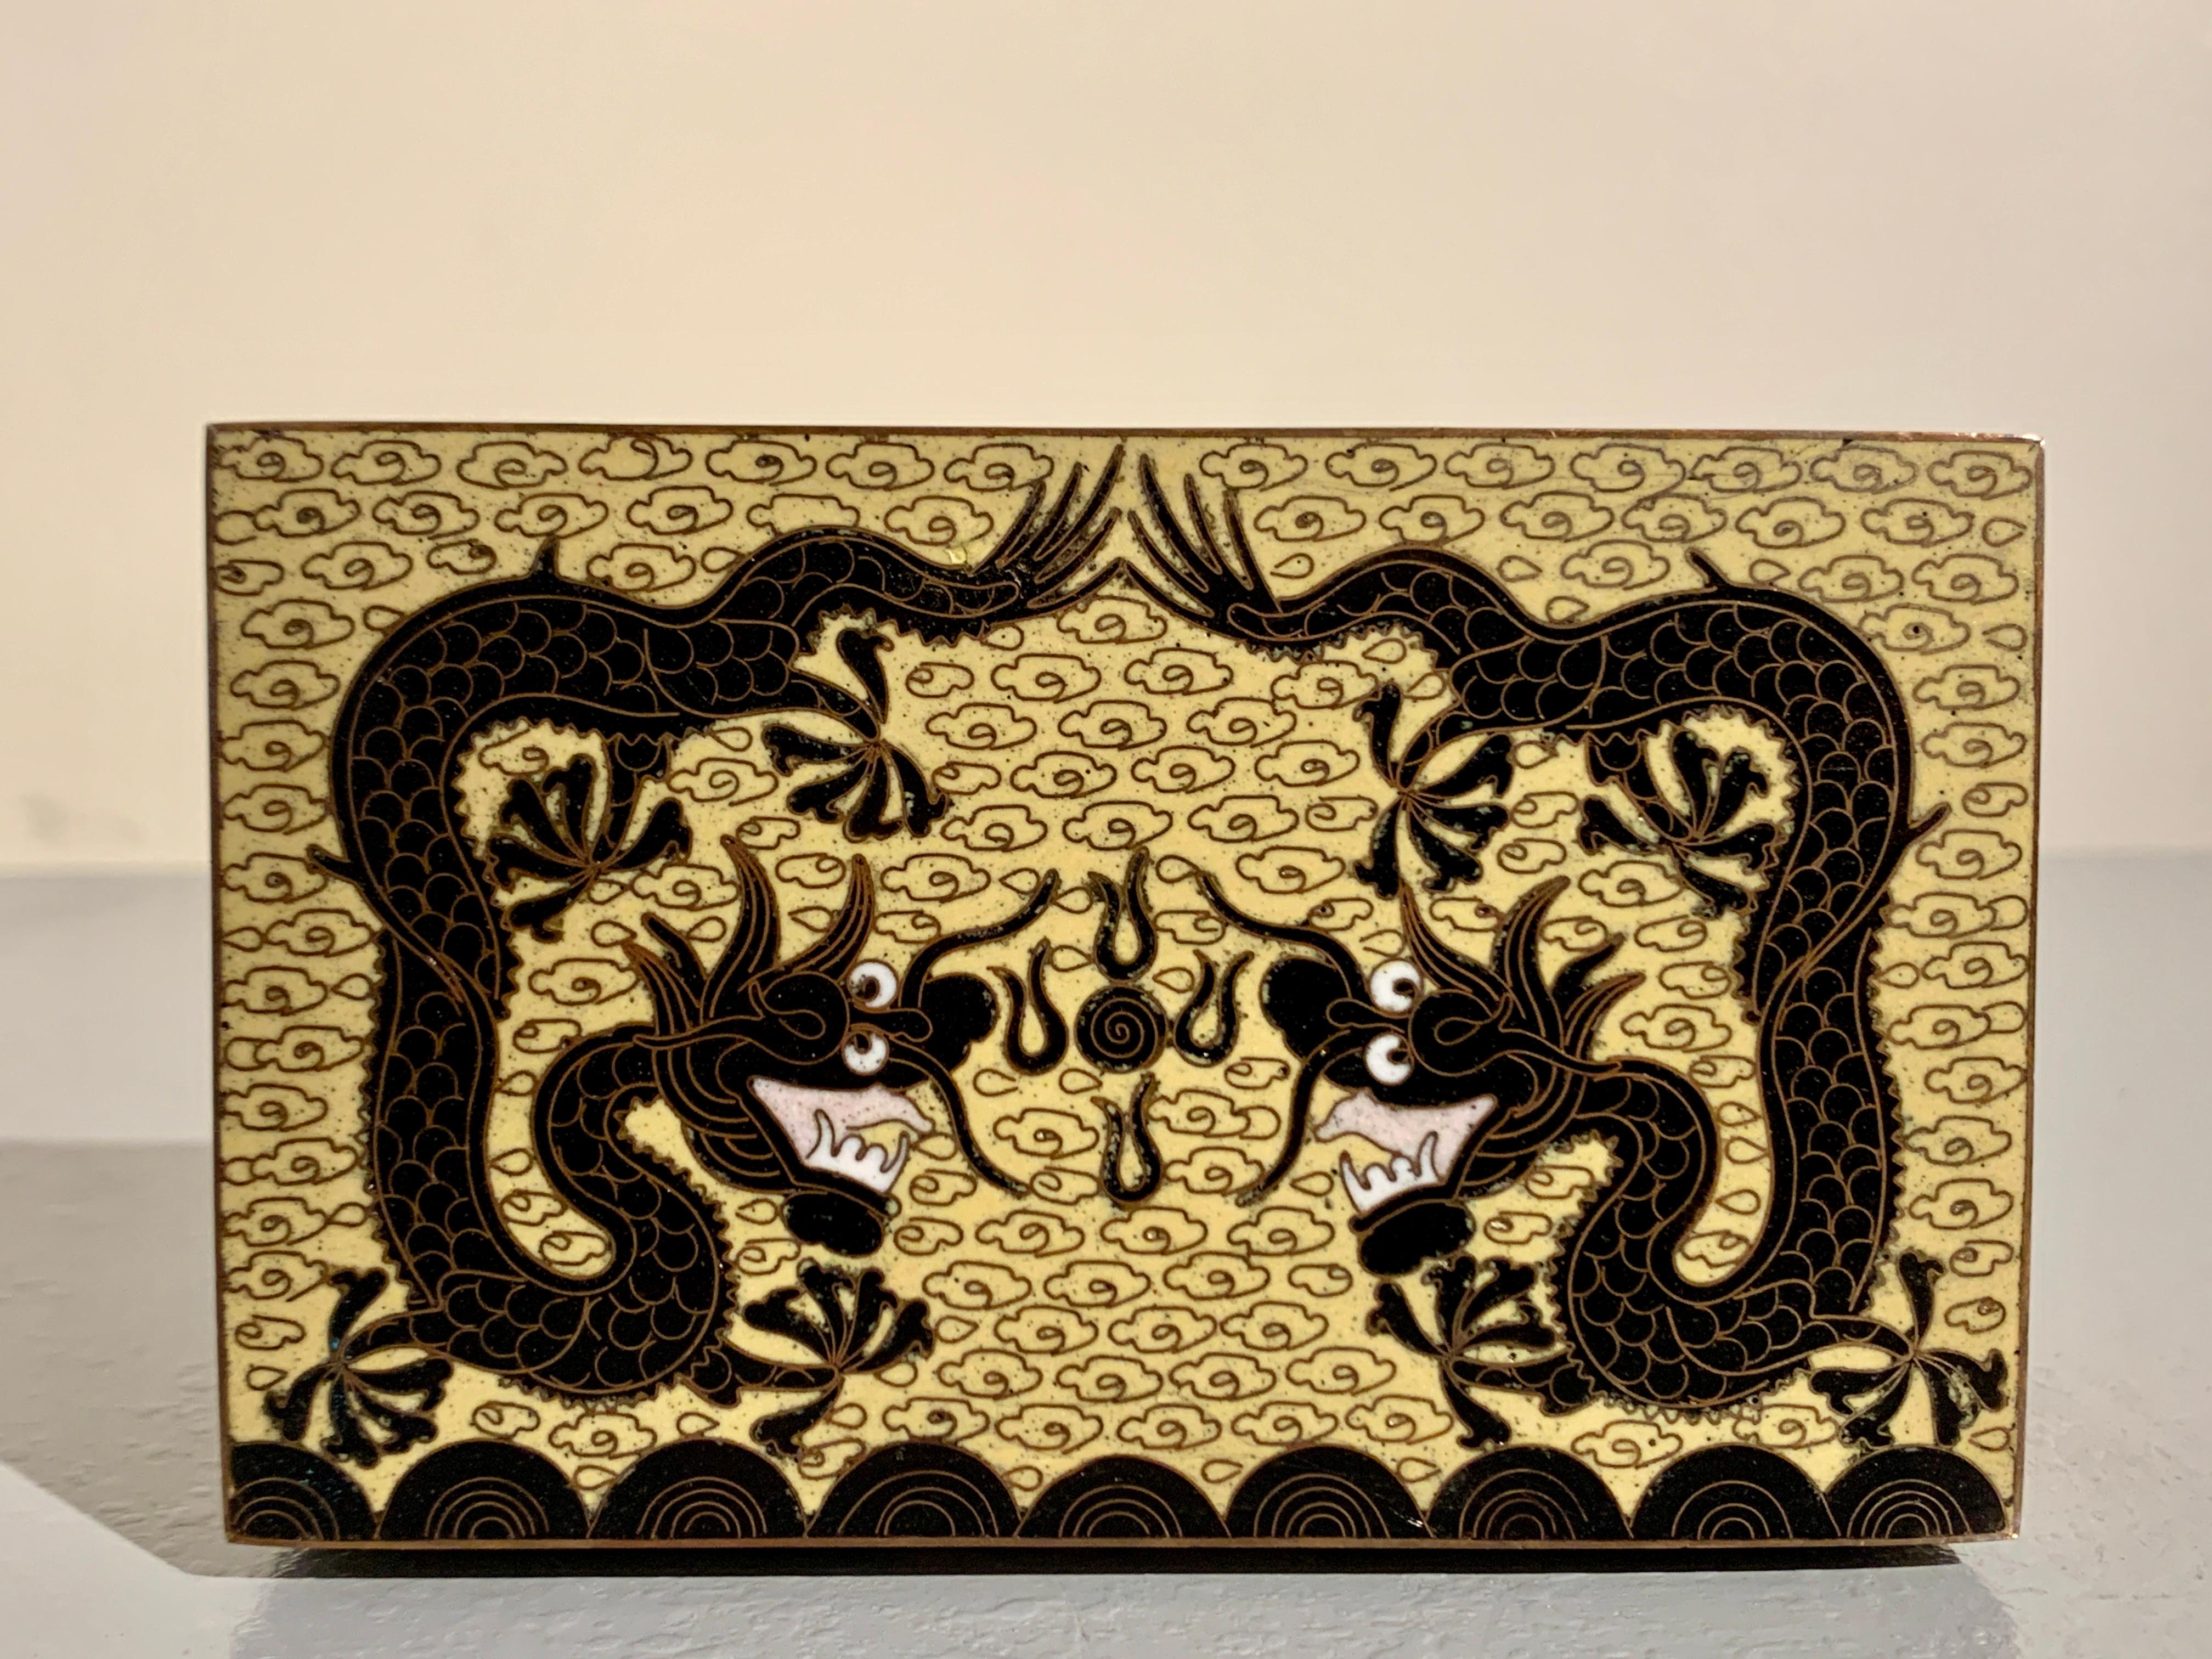 Charmante petite boîte à bibelots en cloisonné jaune de Chine avec des dragons, période de la République, vers 1920, Chine.

La petite boîte repose sur quatre pieds en chignon et est ornée de dragons en émail cloisonné noir sur fond d'émail